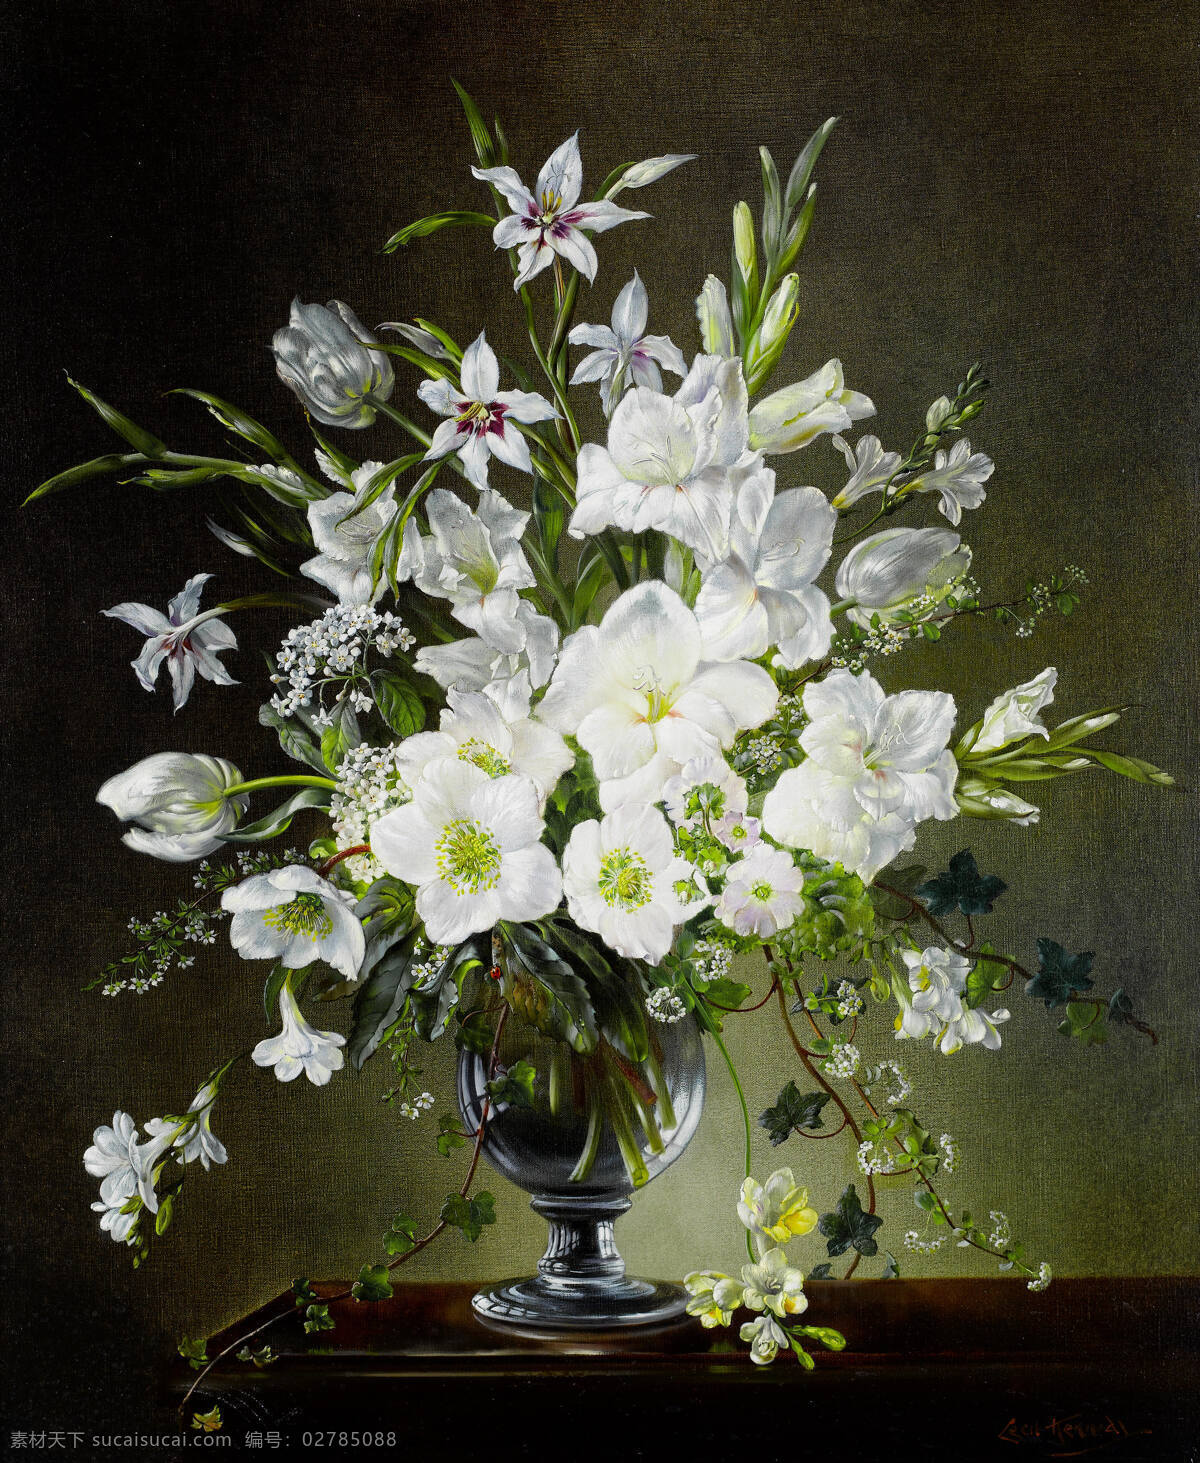 静物油画 塞西尔 甘乃迪 作品 英国静物画家 永恒之美 混搭鲜花 玻璃花瓶 白色色调 20世纪油画 油画 绘画书法 文化艺术